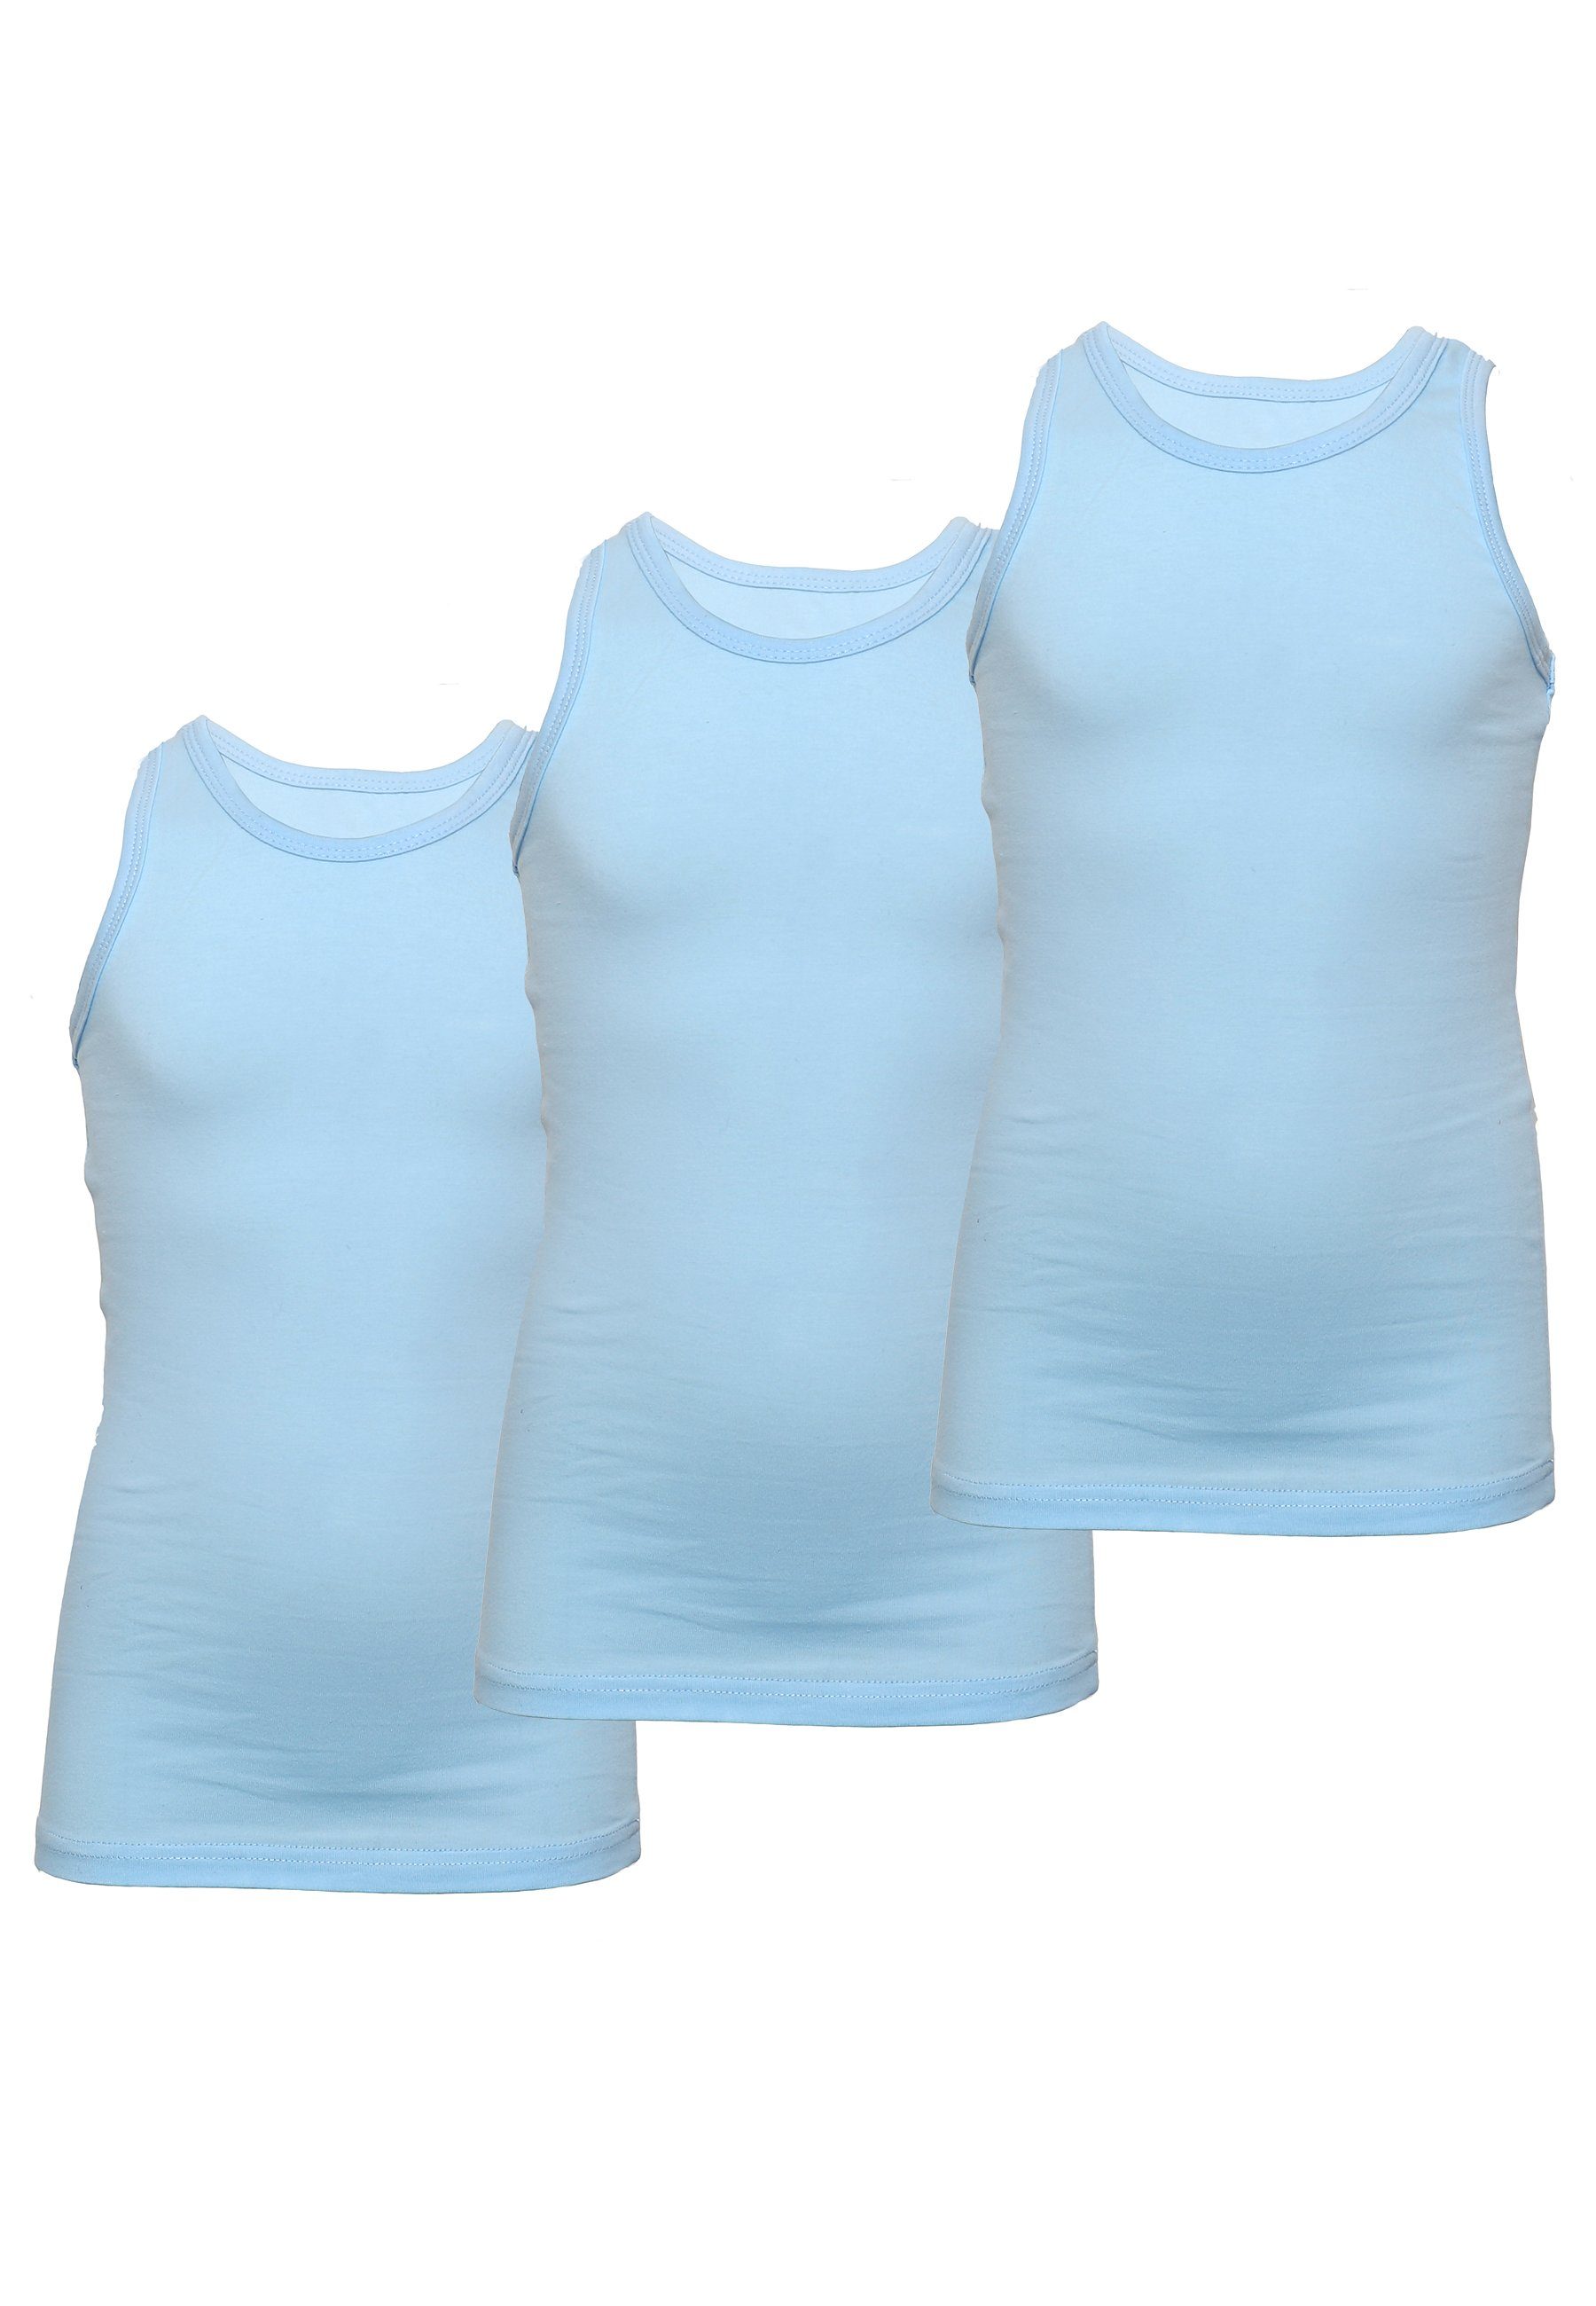 CARBURANT Unterhemd Unterhemden für Mädchen im 3er-Pack (3er-Pack)